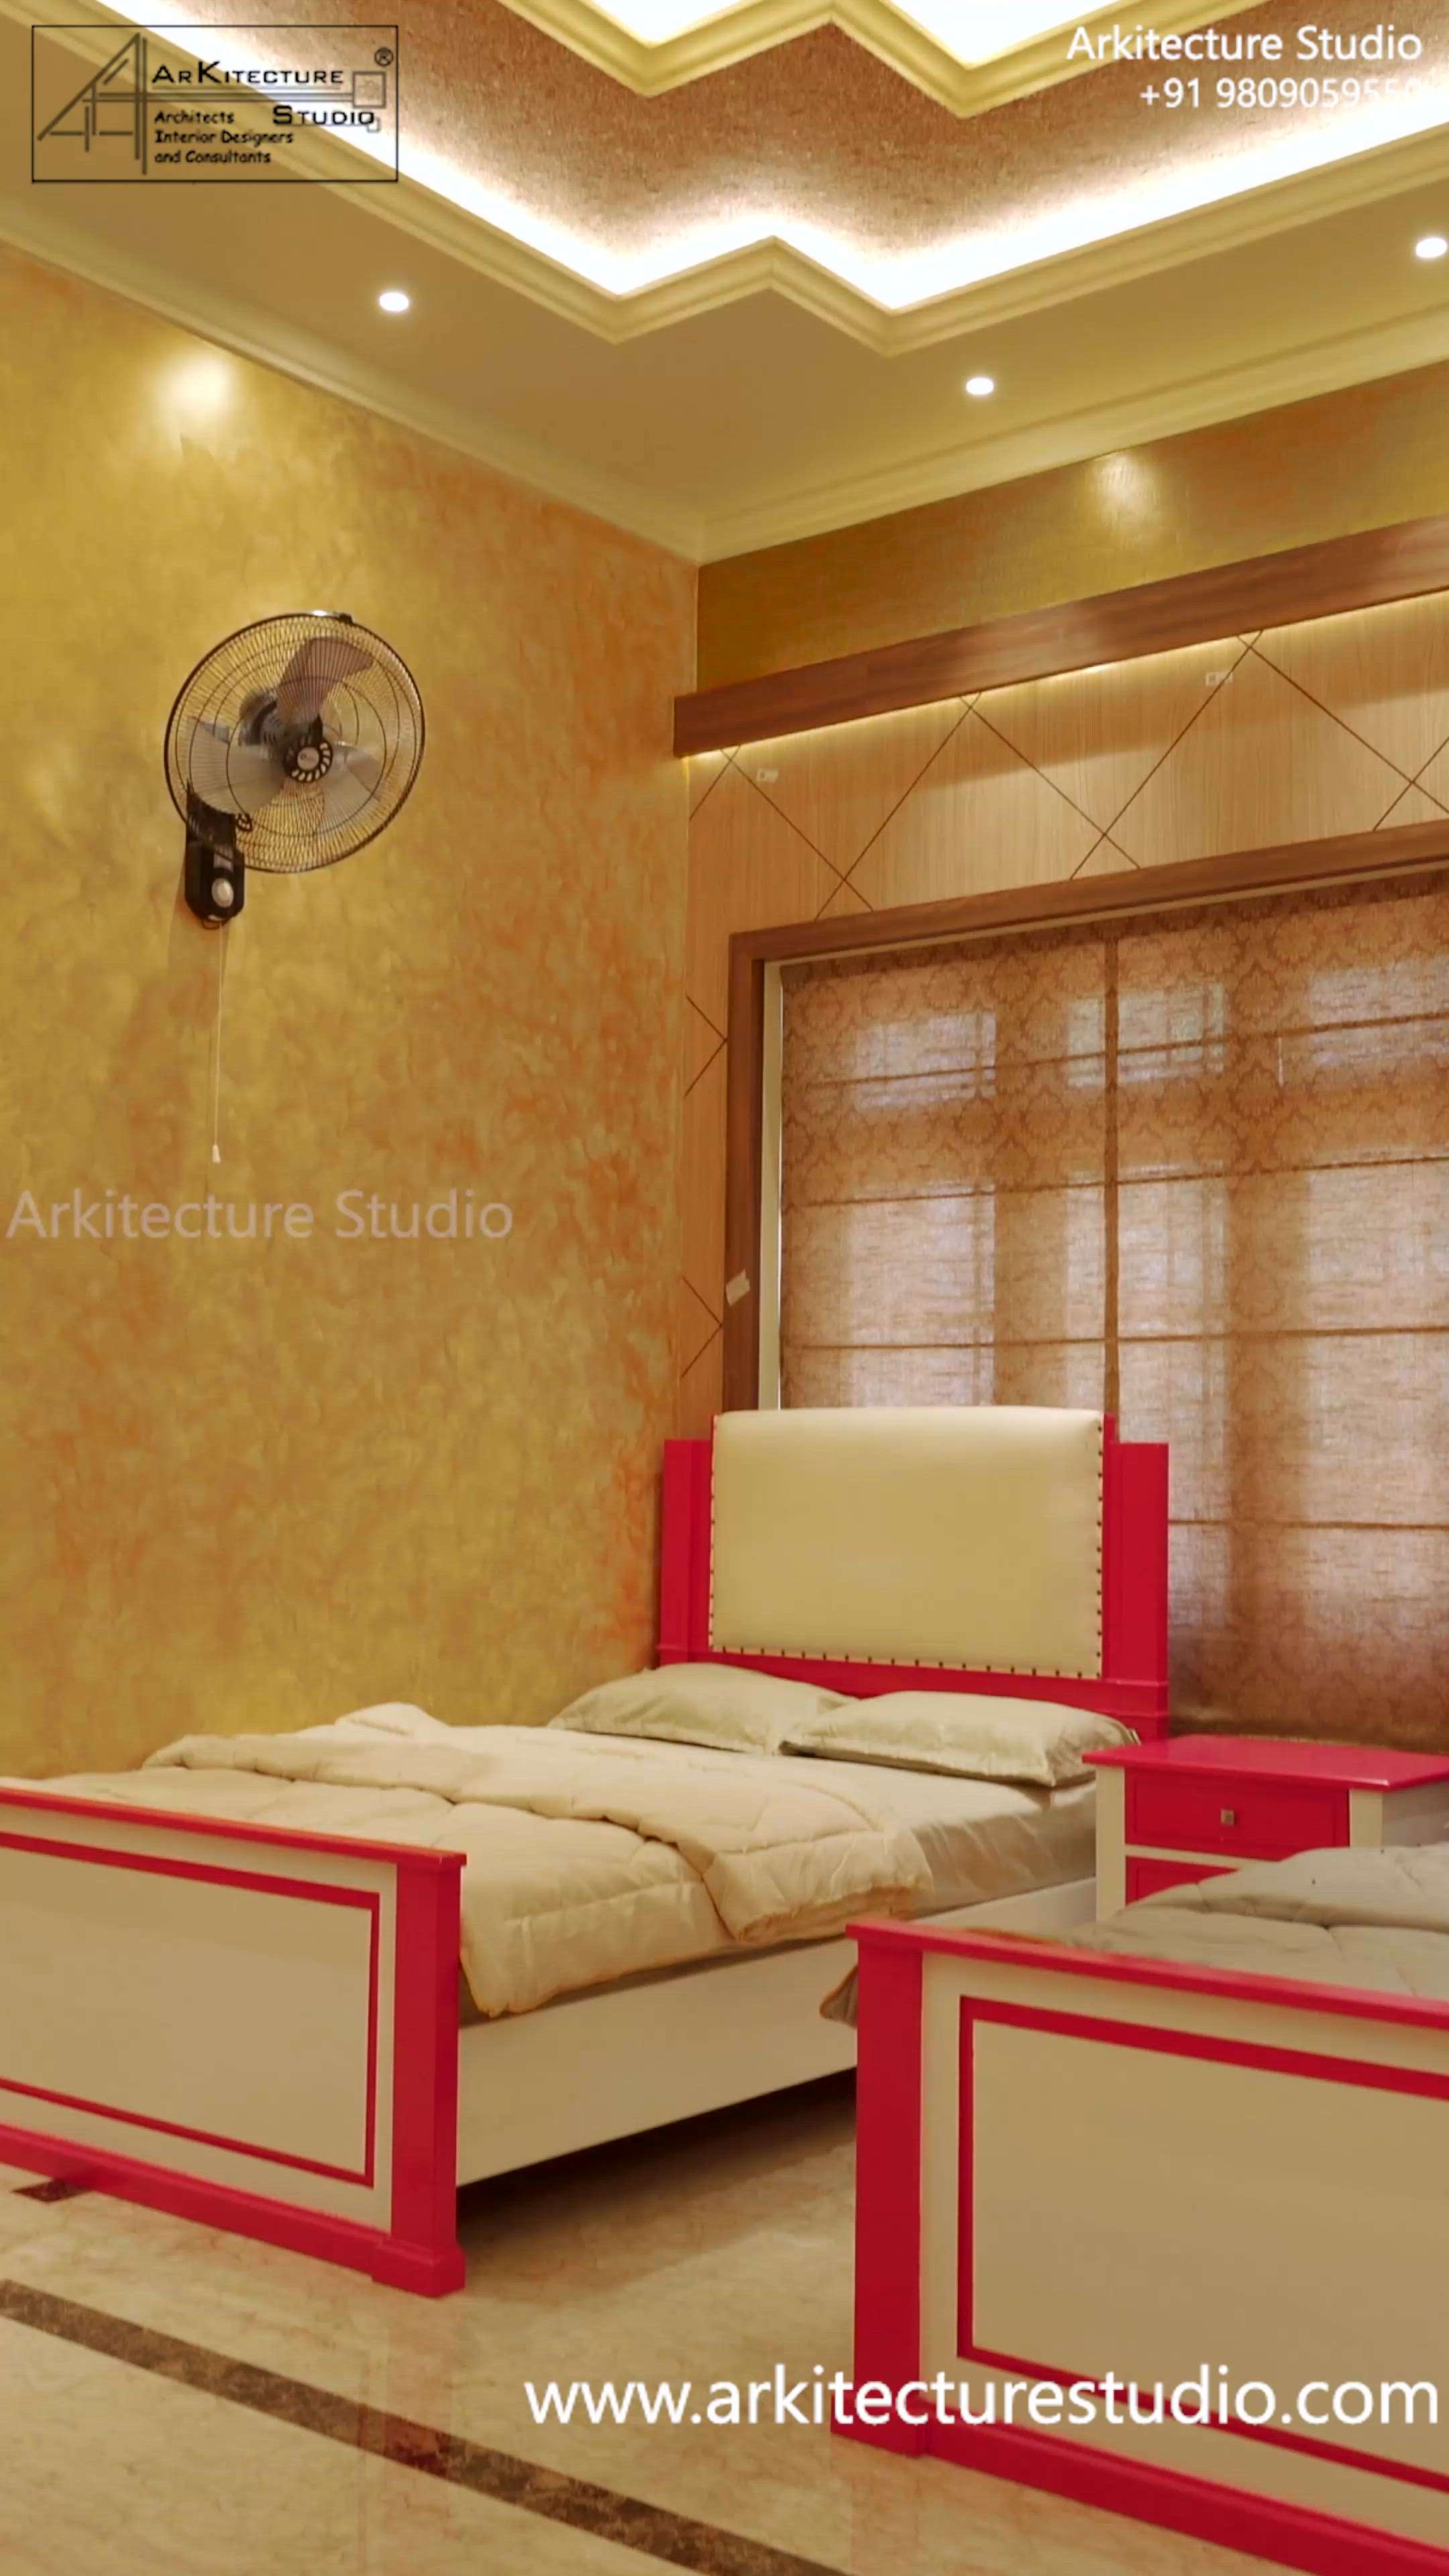 luxury classic interior

colonial architecture
www.arkitecturestudio.com